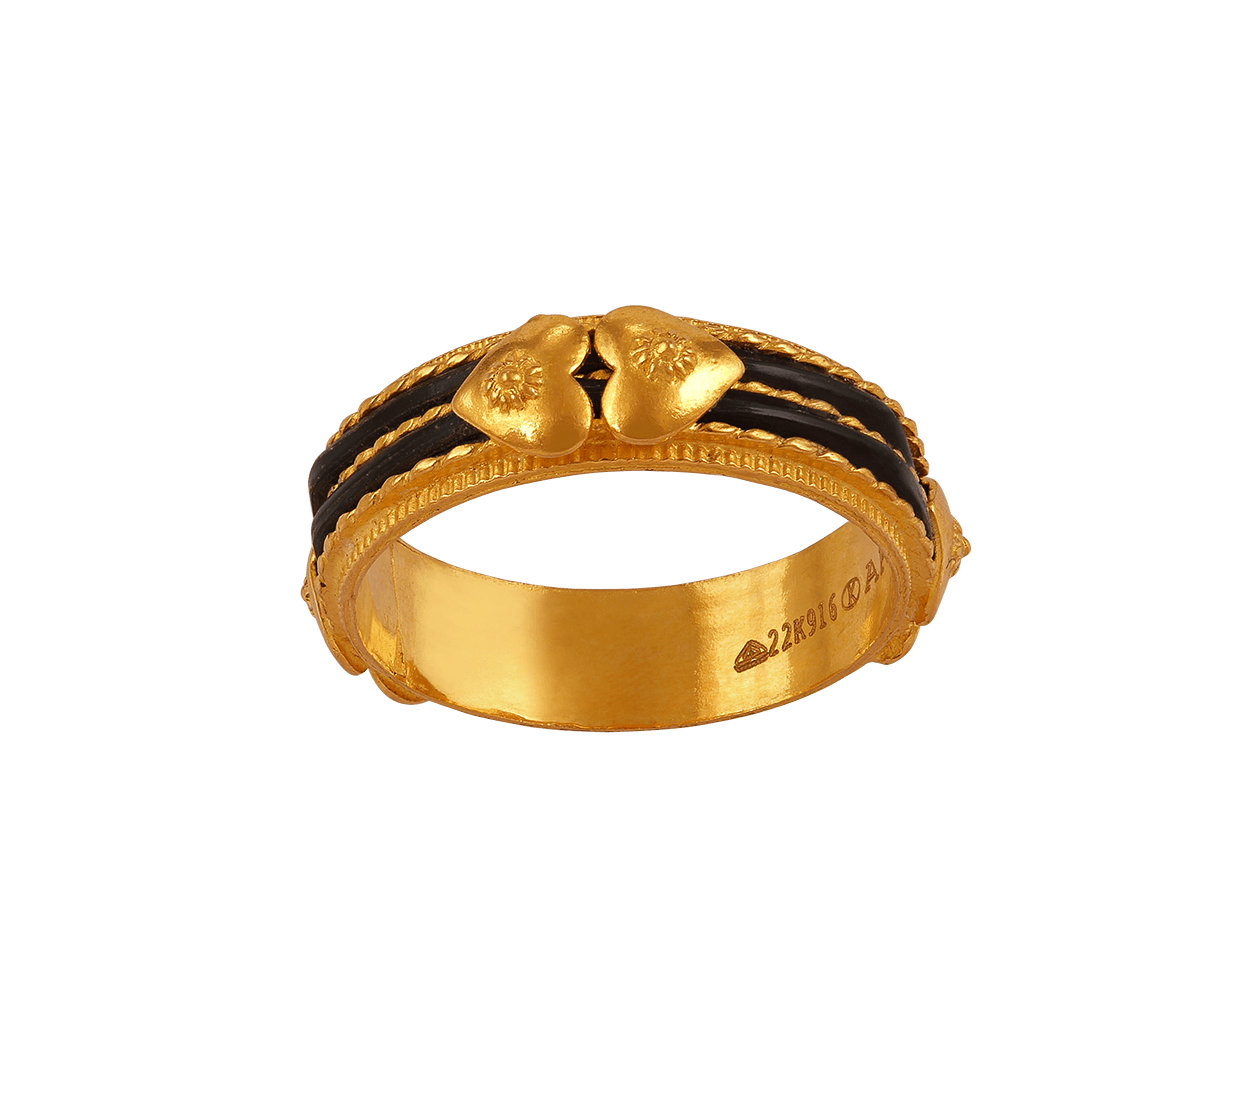 gold rings for men  gold rings  gold men ring  gold casting ring  rings  for men  men ring online  gold rings online  elep